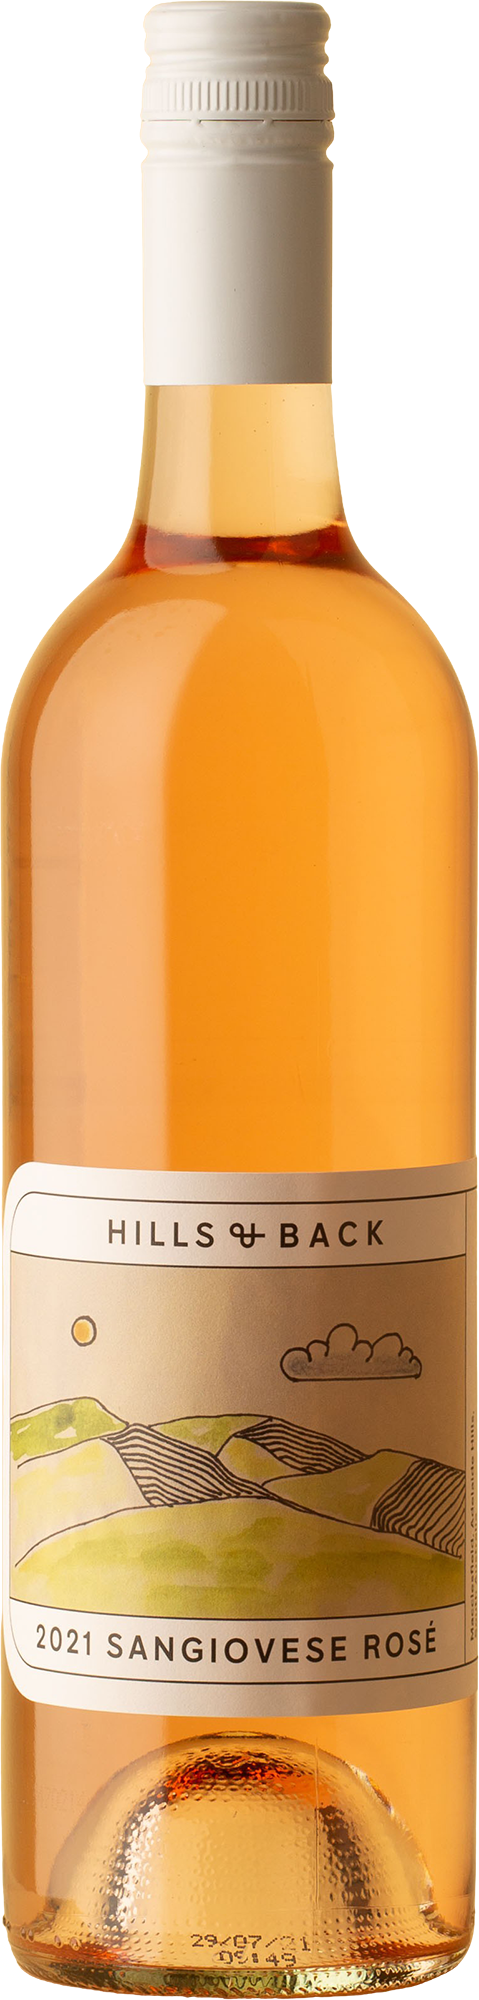 Hills & Back - Rosé 2021 Rosé